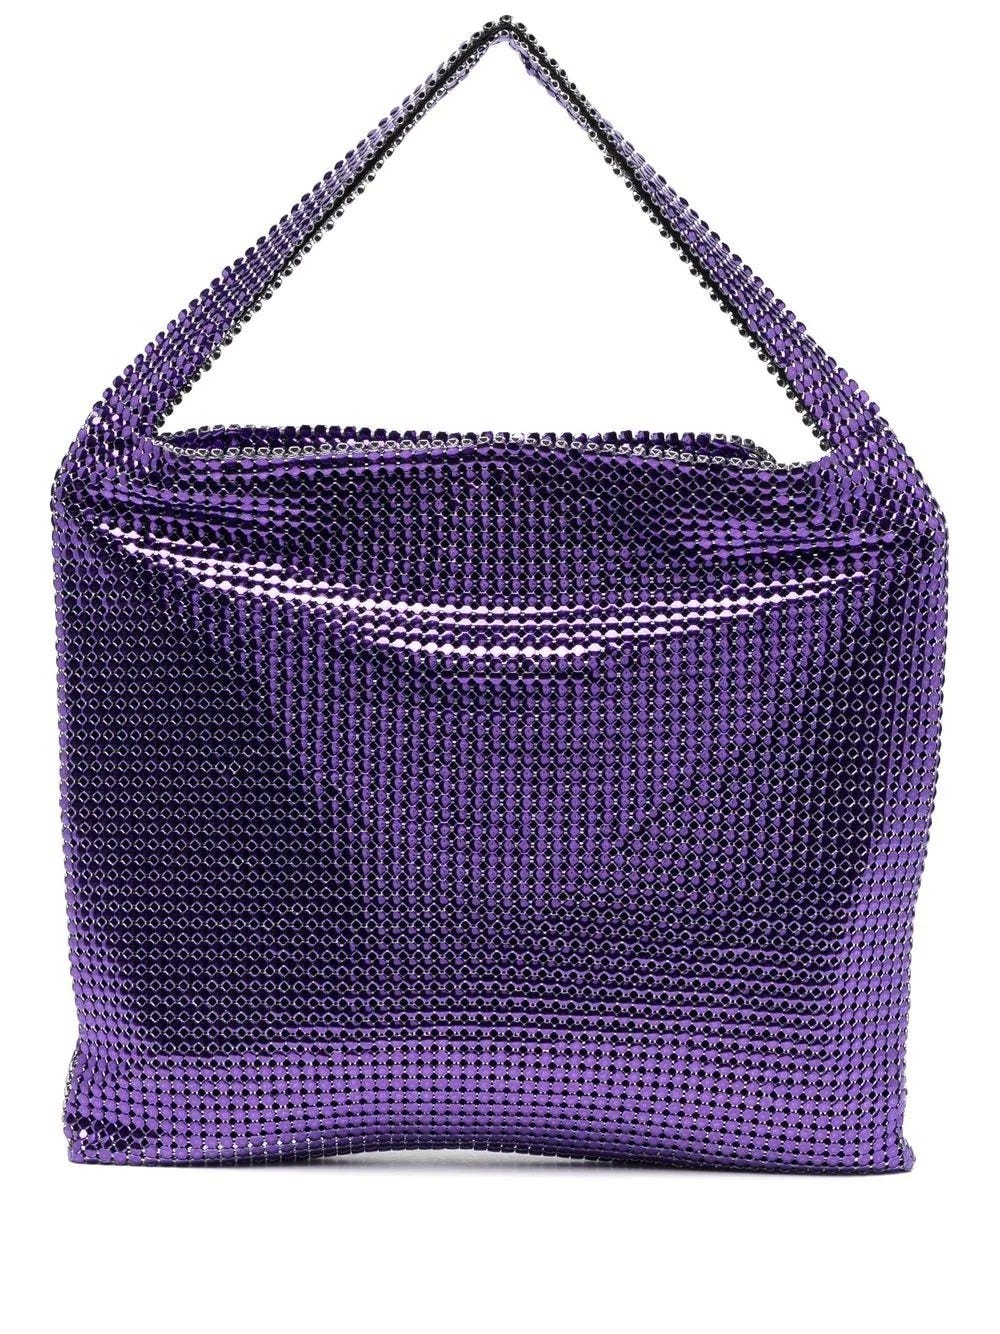 Paco Rabanne Pixel Metallic Tote Bag In Violett